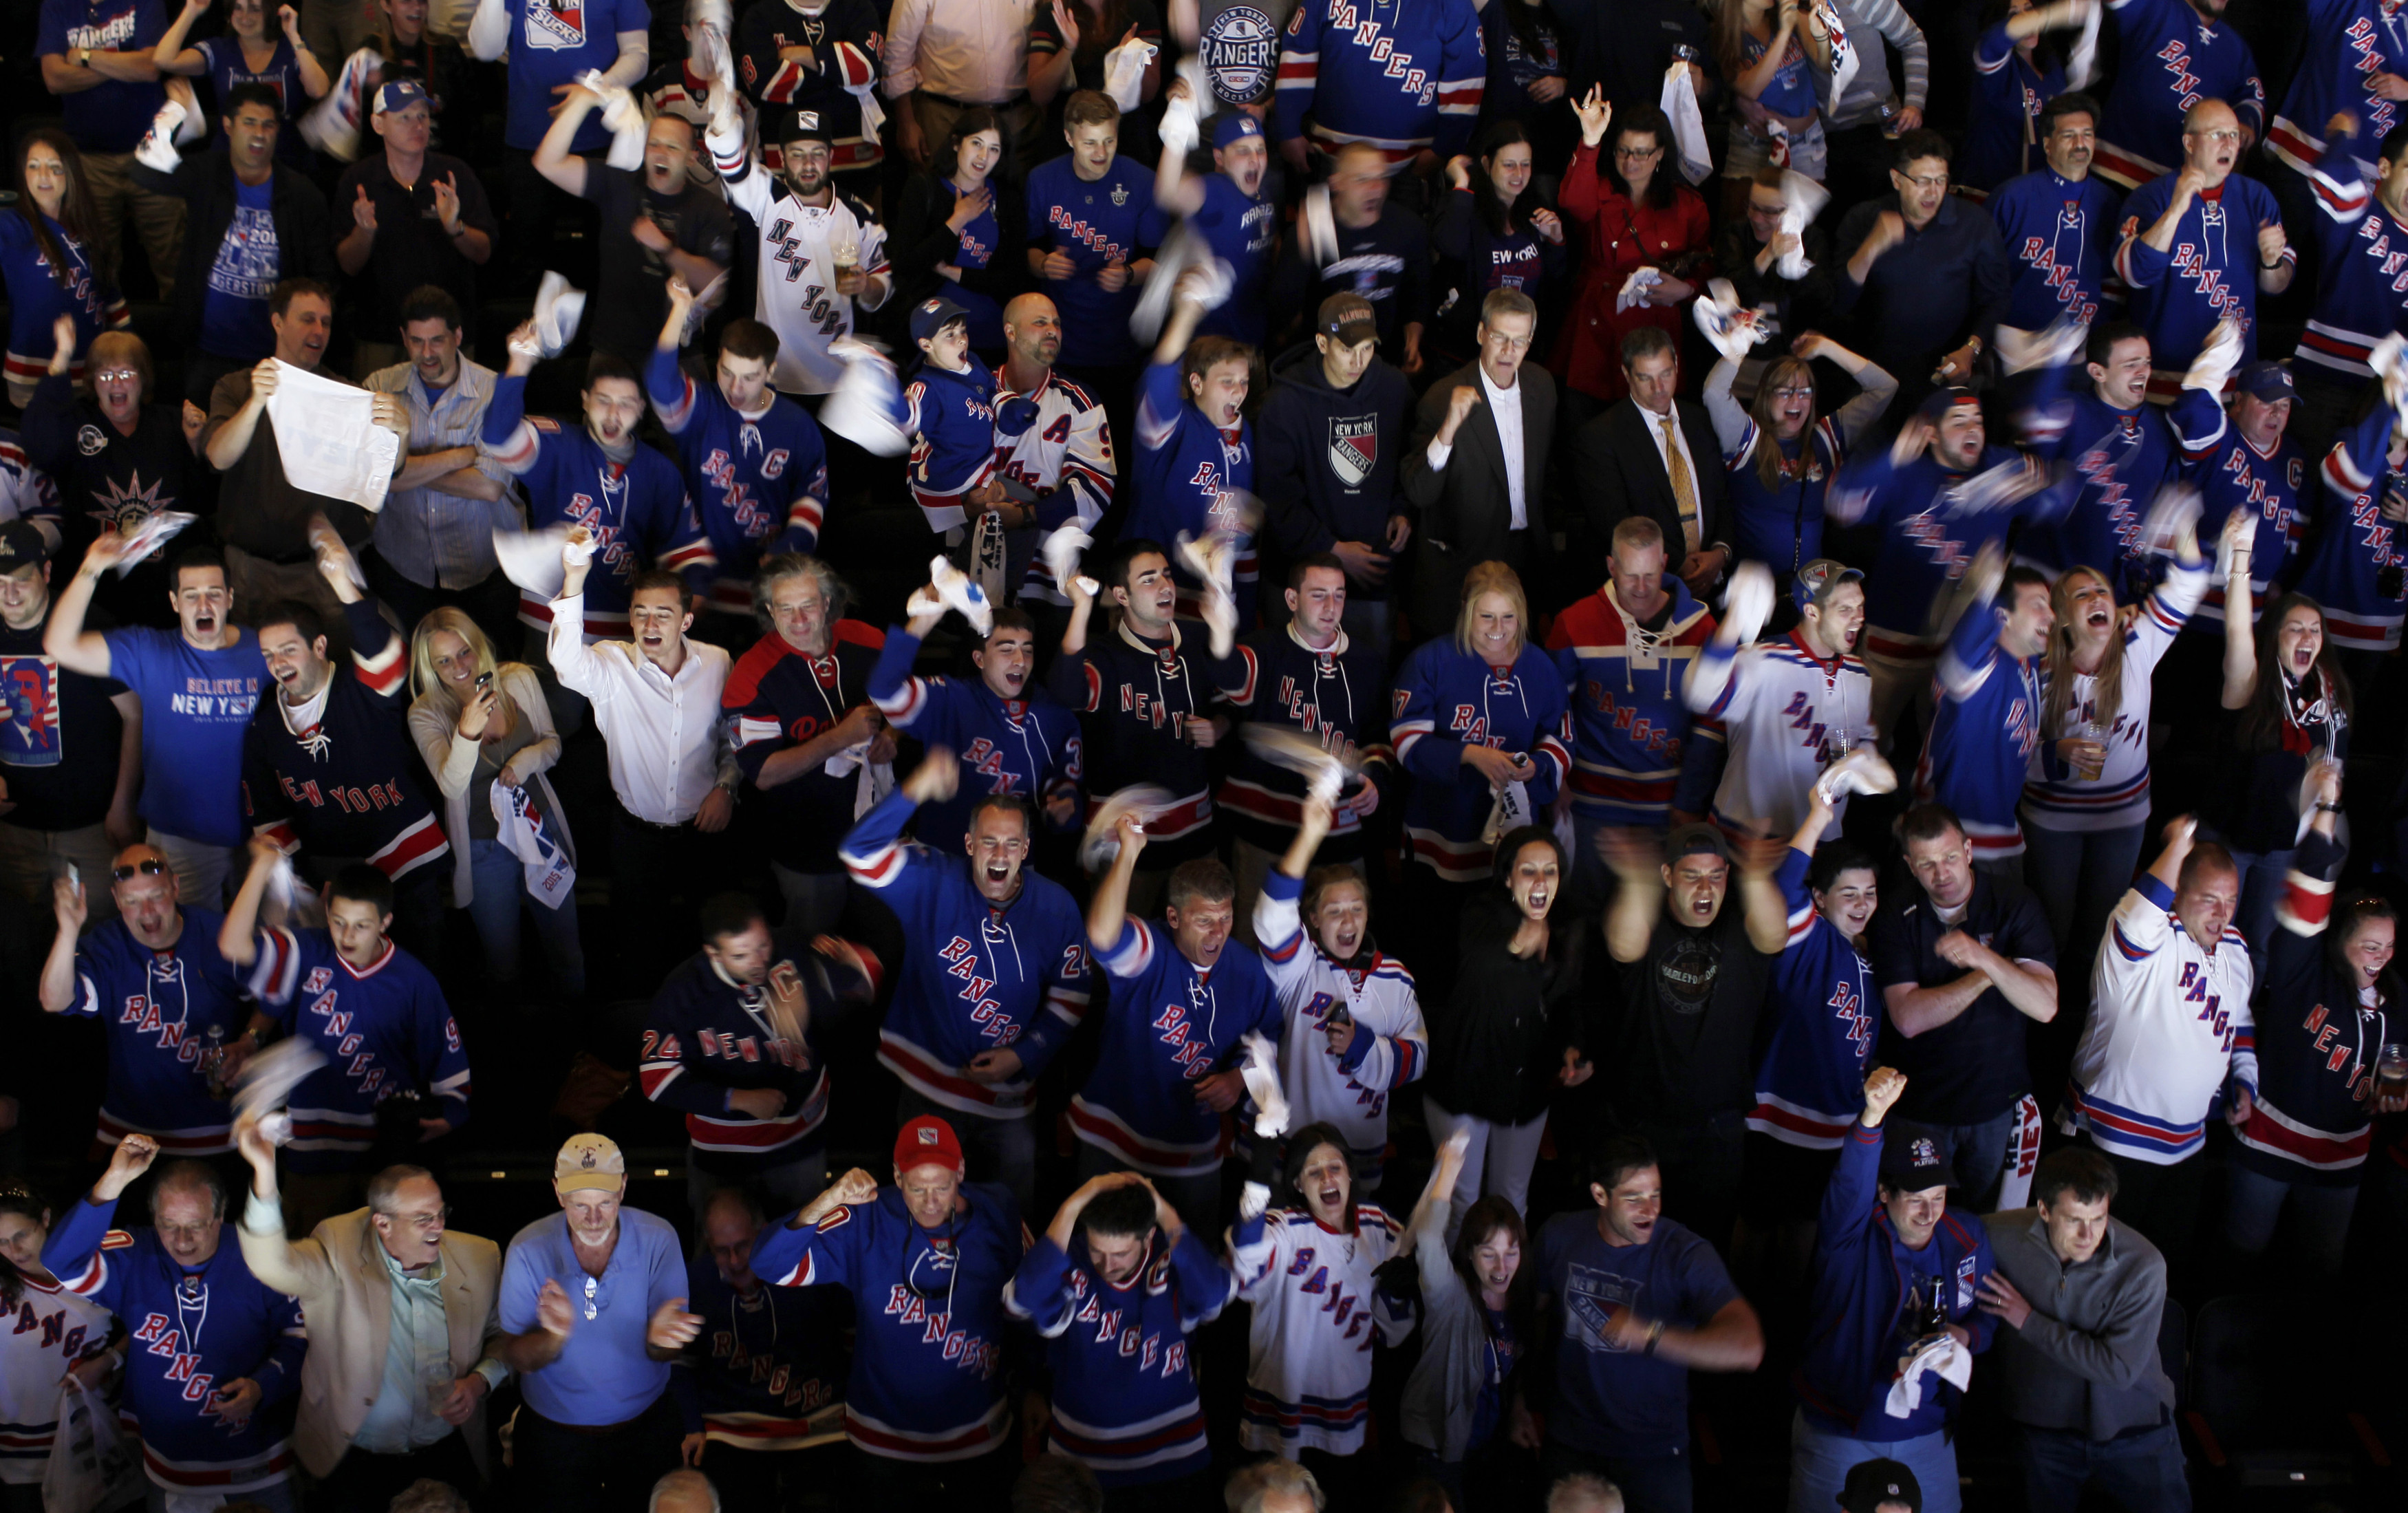 NHL playoffs full of NYC teams: Rangers, Islanders, Devils